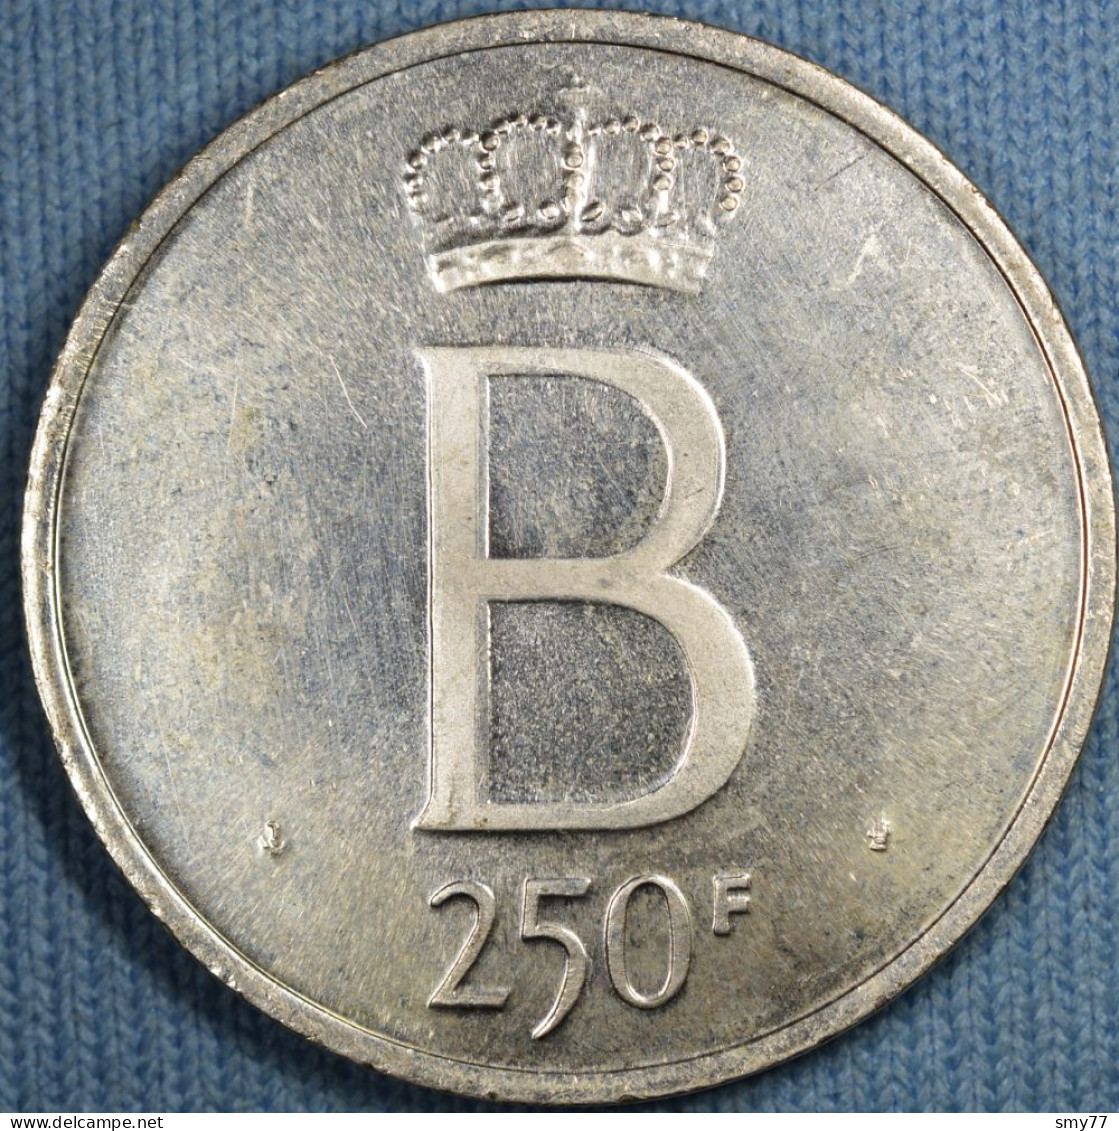 Belgique • 250 Francs 1976 Fr • Tranche étoilée - Petit B - 5 Droit - Flan Poli • [24-266] - 250 Francs